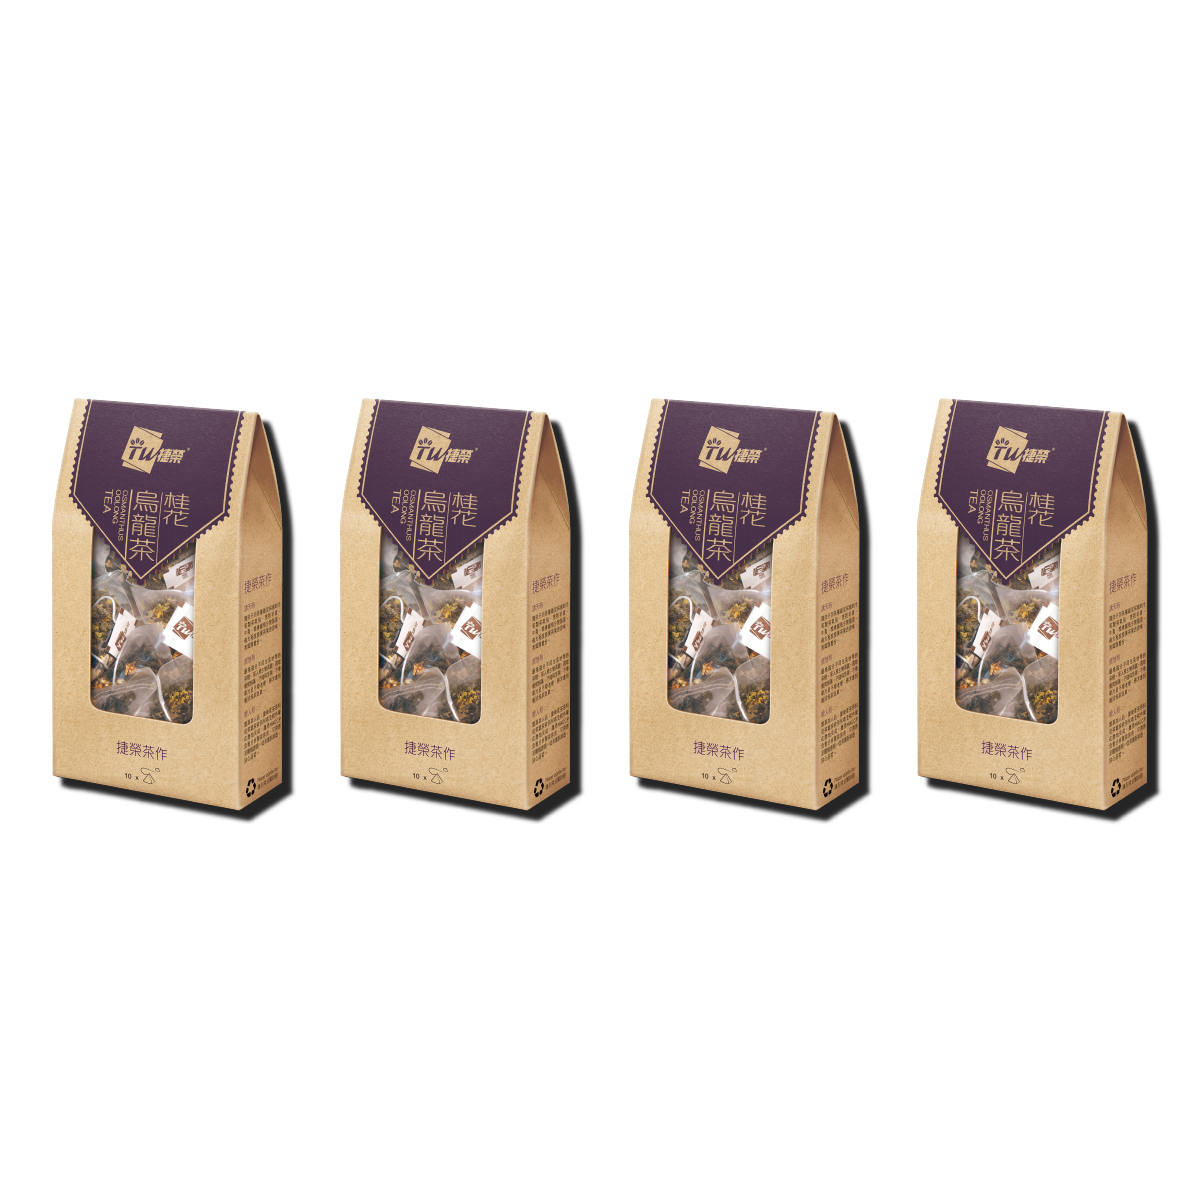 TW Osmanthus Oolong Tea Bag 2.5g x 10 sachets x (4 boxes)